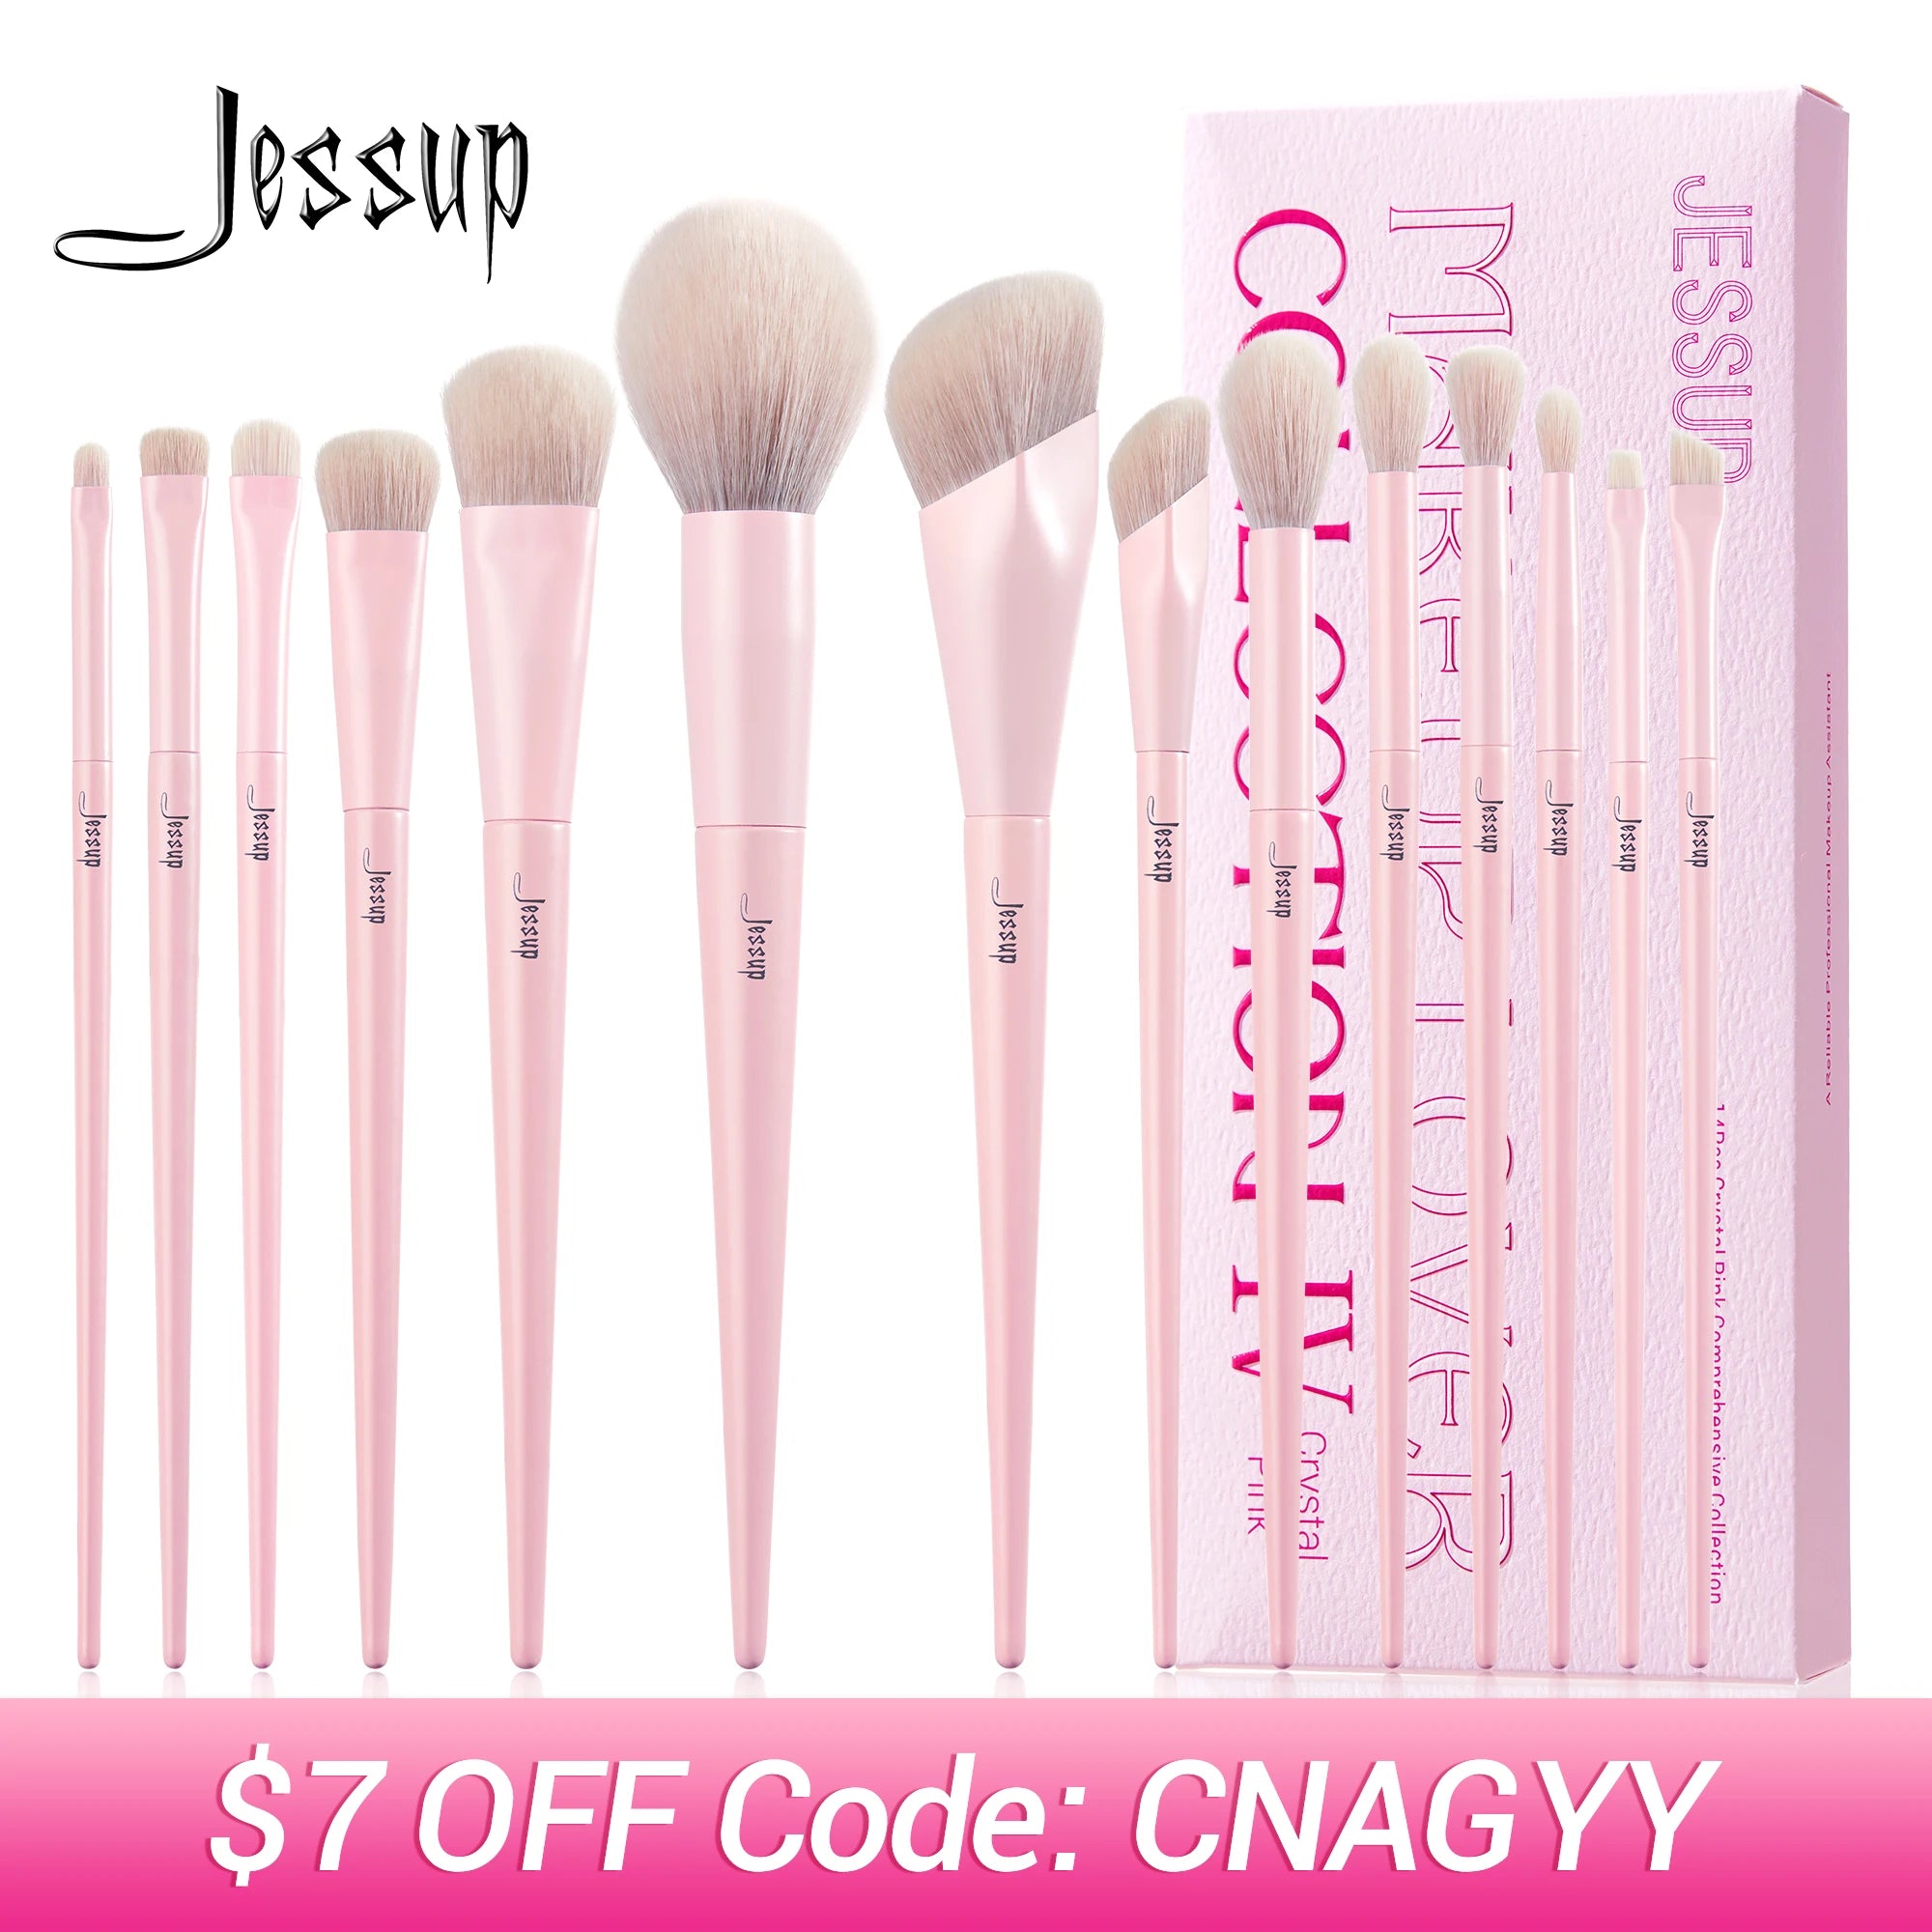 Jessup Pink Makeup Brushes Set 14pcs Make up Brushes Premium Vegan Foundation Blush Eyeshadow liner Powder Blending Brush,T495